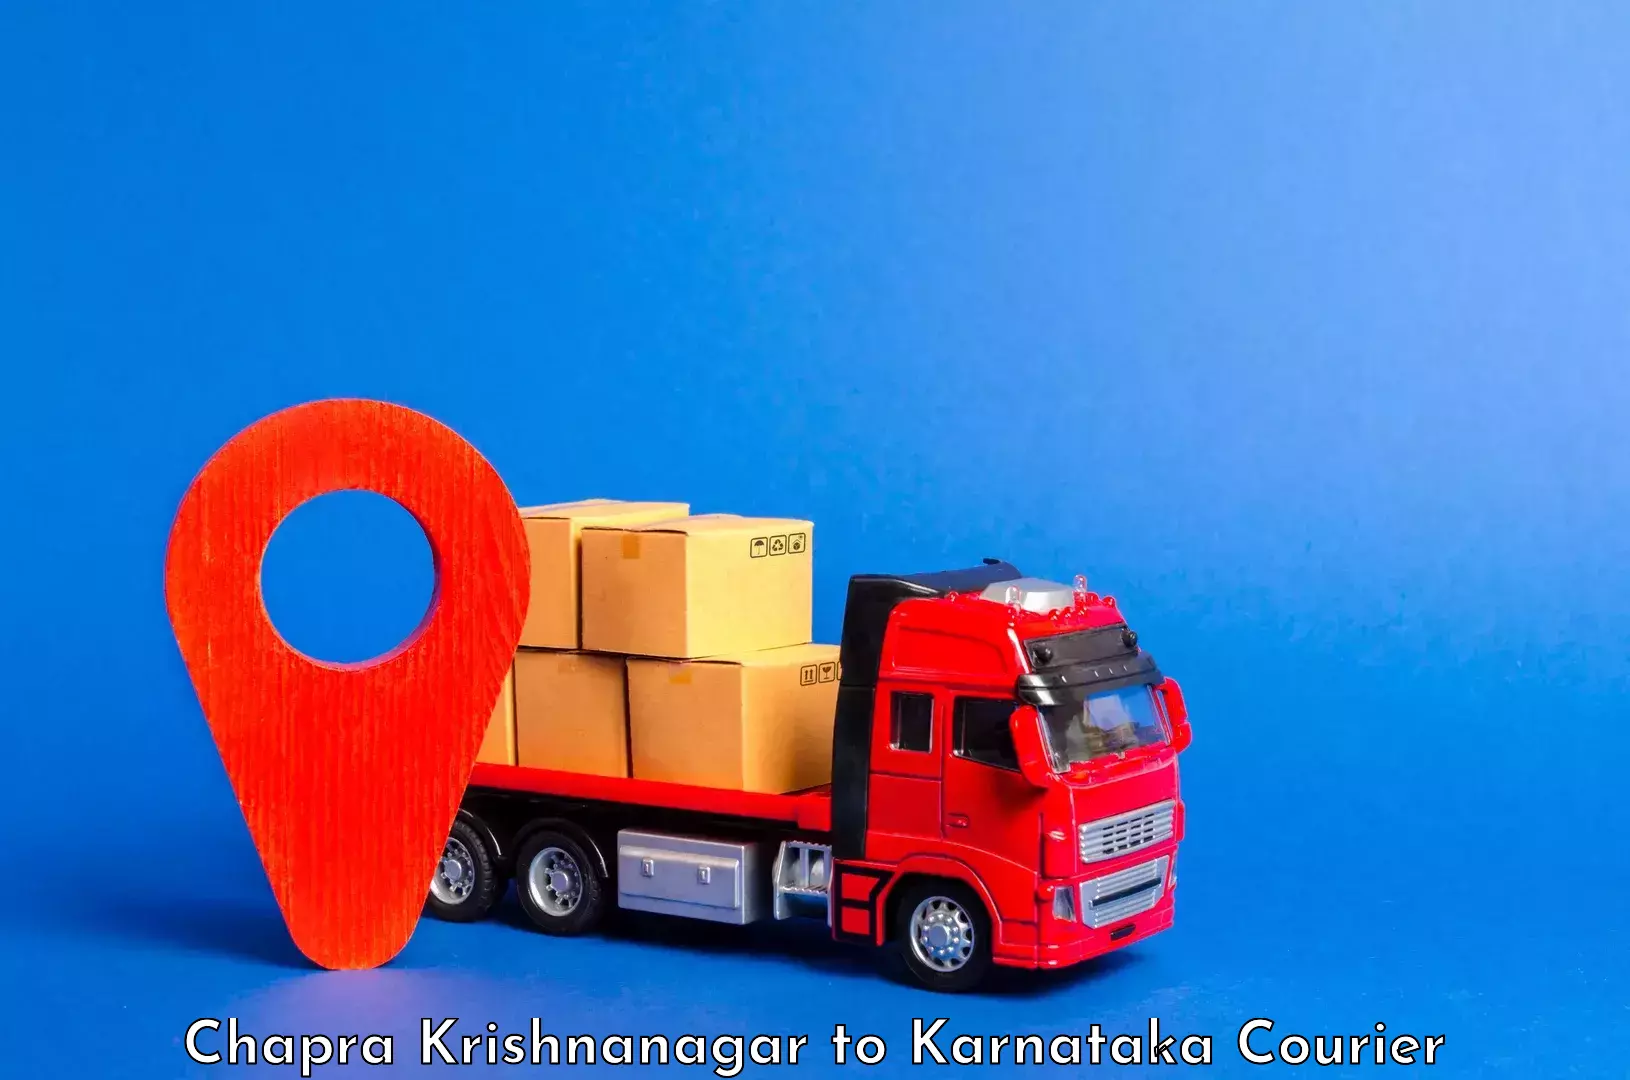 Excess baggage transport in Chapra Krishnanagar to Karwar